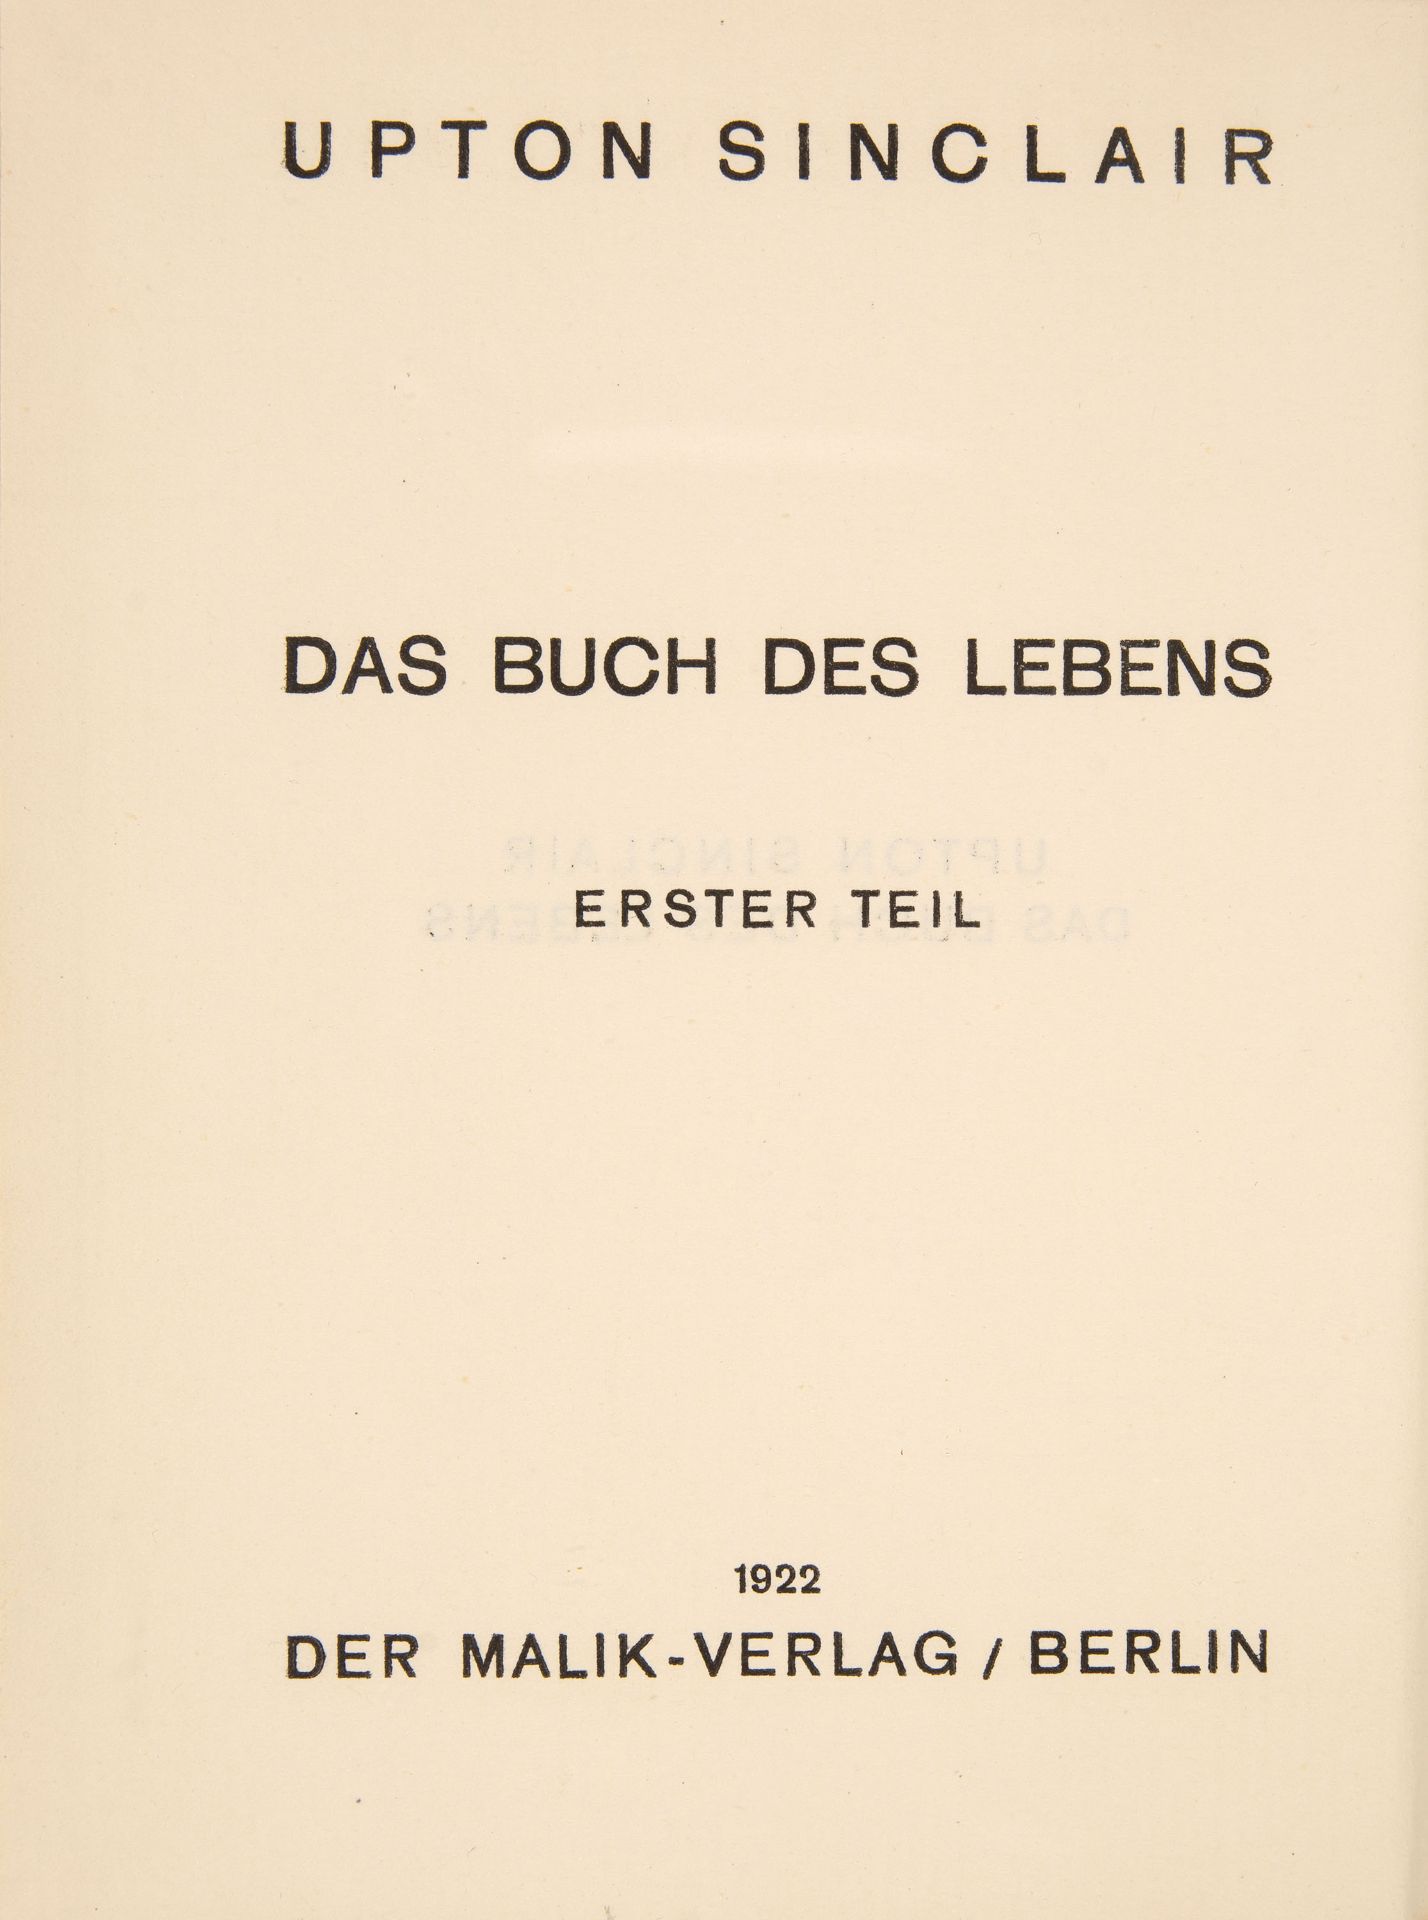 U. Sinclair, Das Buch des Lebens. 3 Bde. / Der Rekrut / Der Parademarsch. Insges. 5 Bde. Berlin 1922